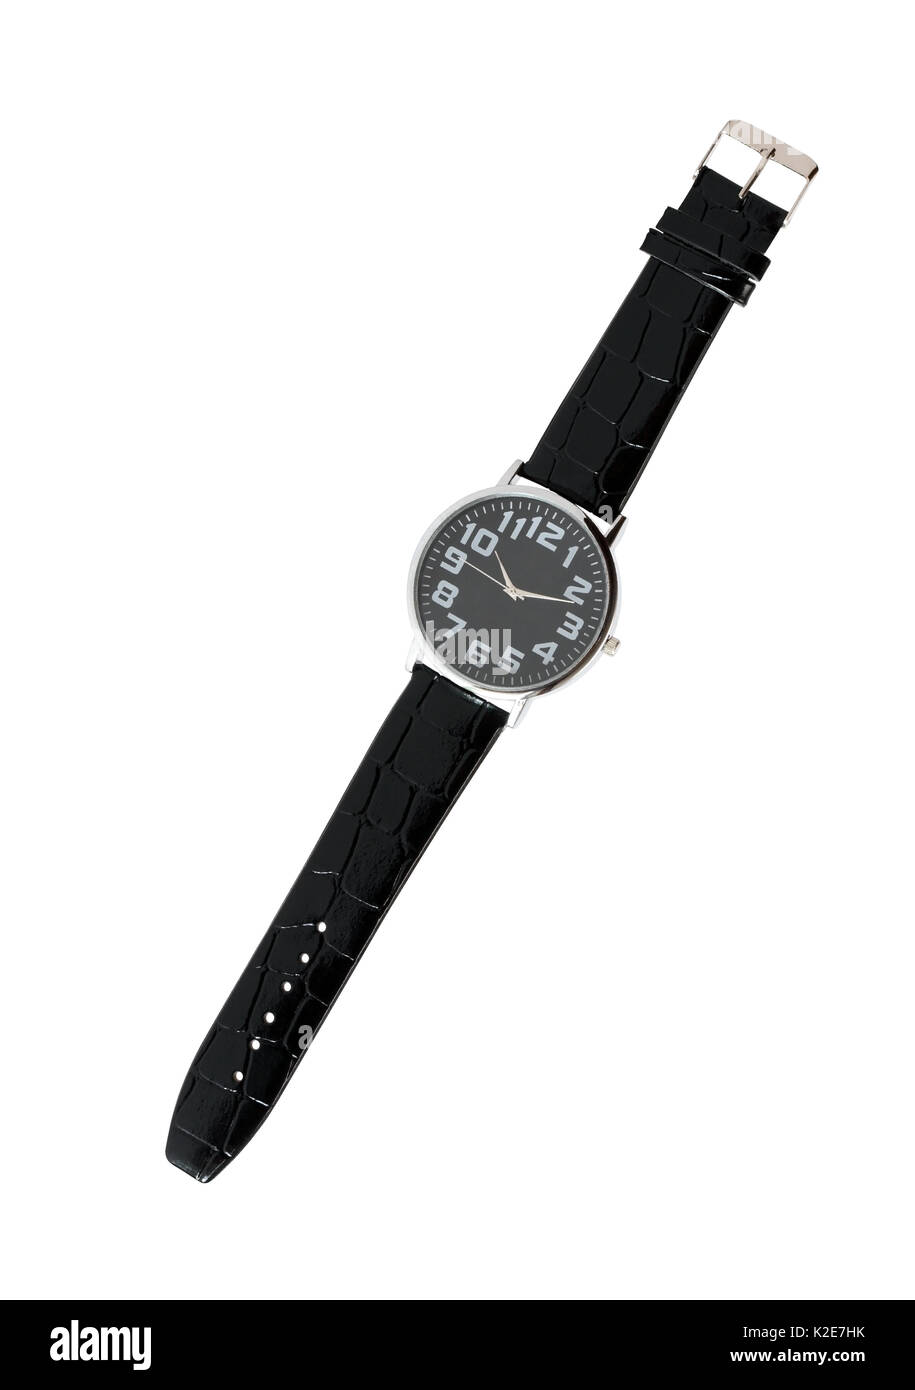 Montre-bracelet moderne avec horloge noir sur fond blanc. isolated with clipping path Banque D'Images